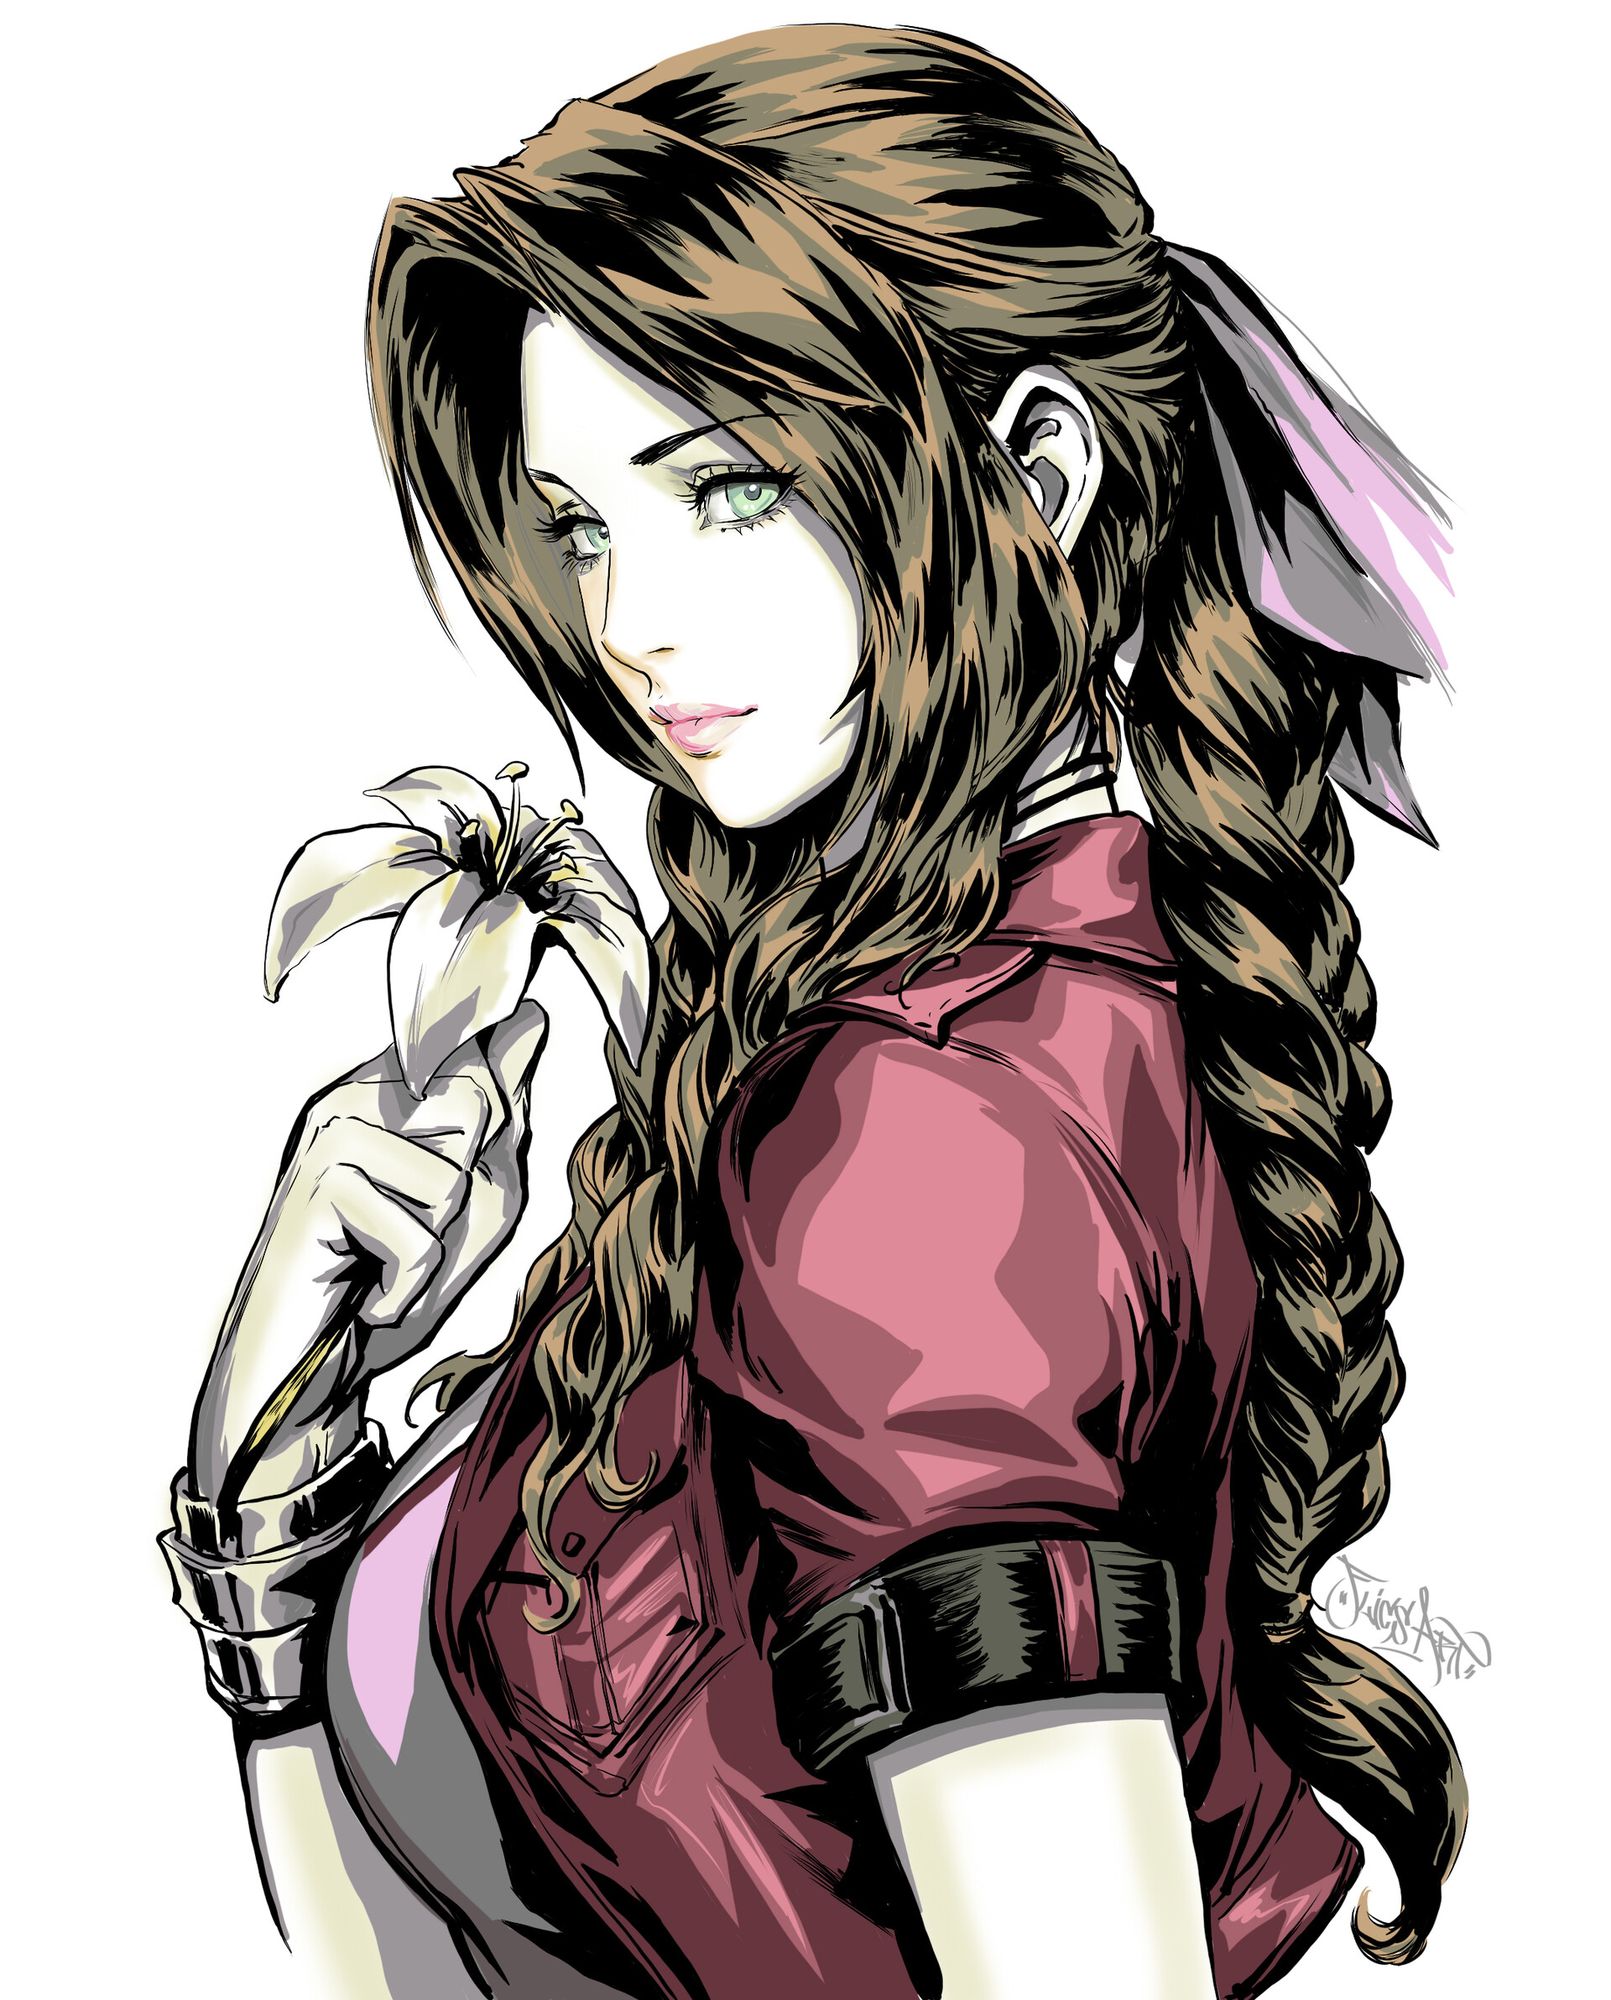 Aerith Gainsborough (Aeris) portrait: Final Fantasy 7 remake: Other games (Artist: Yury Flics)